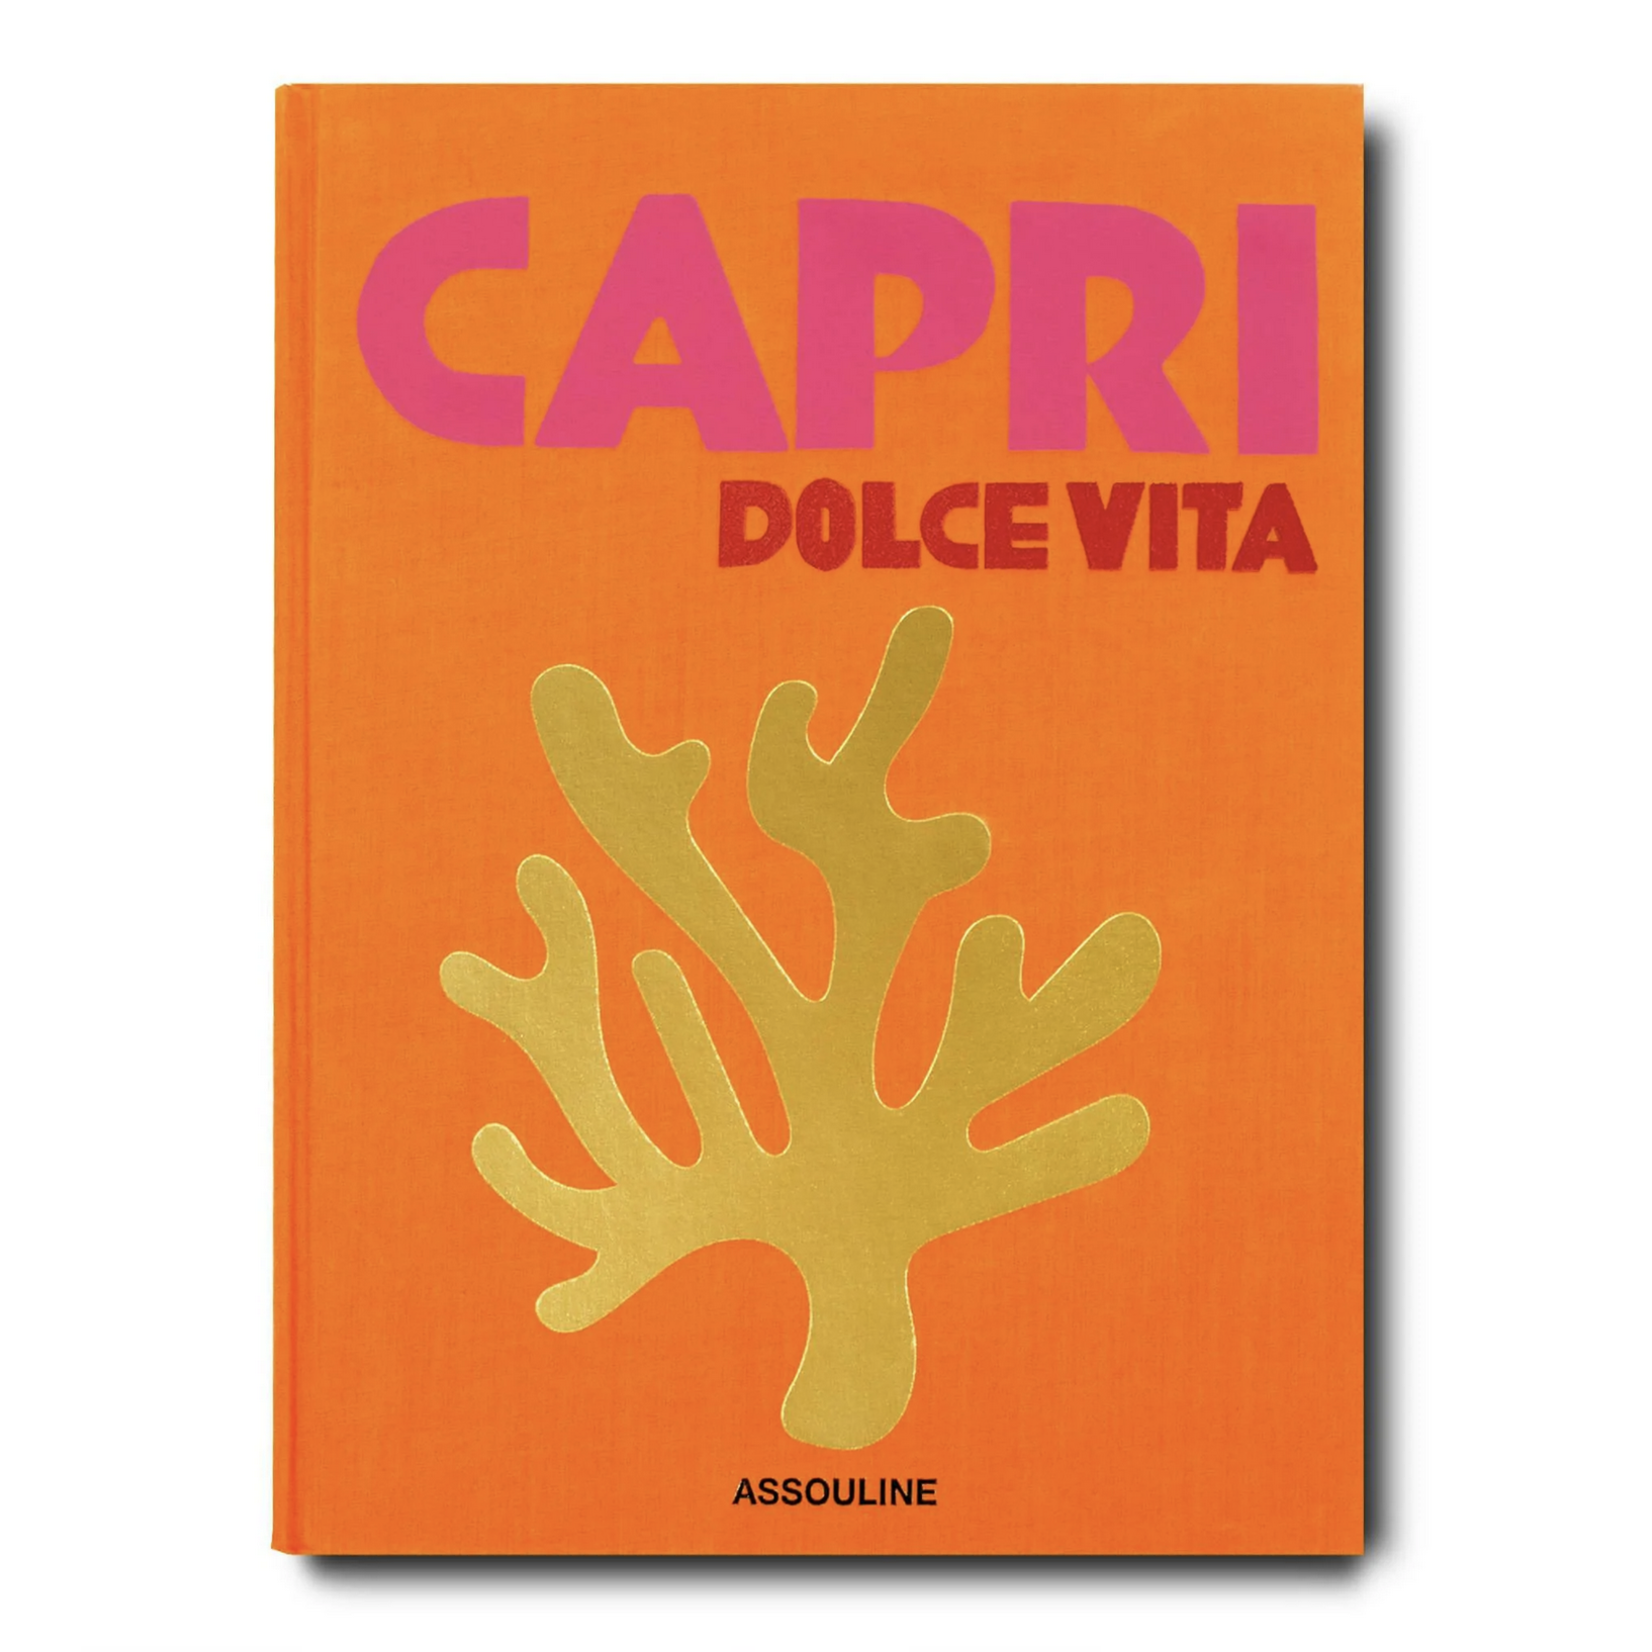 Website Capri Dolce Vita